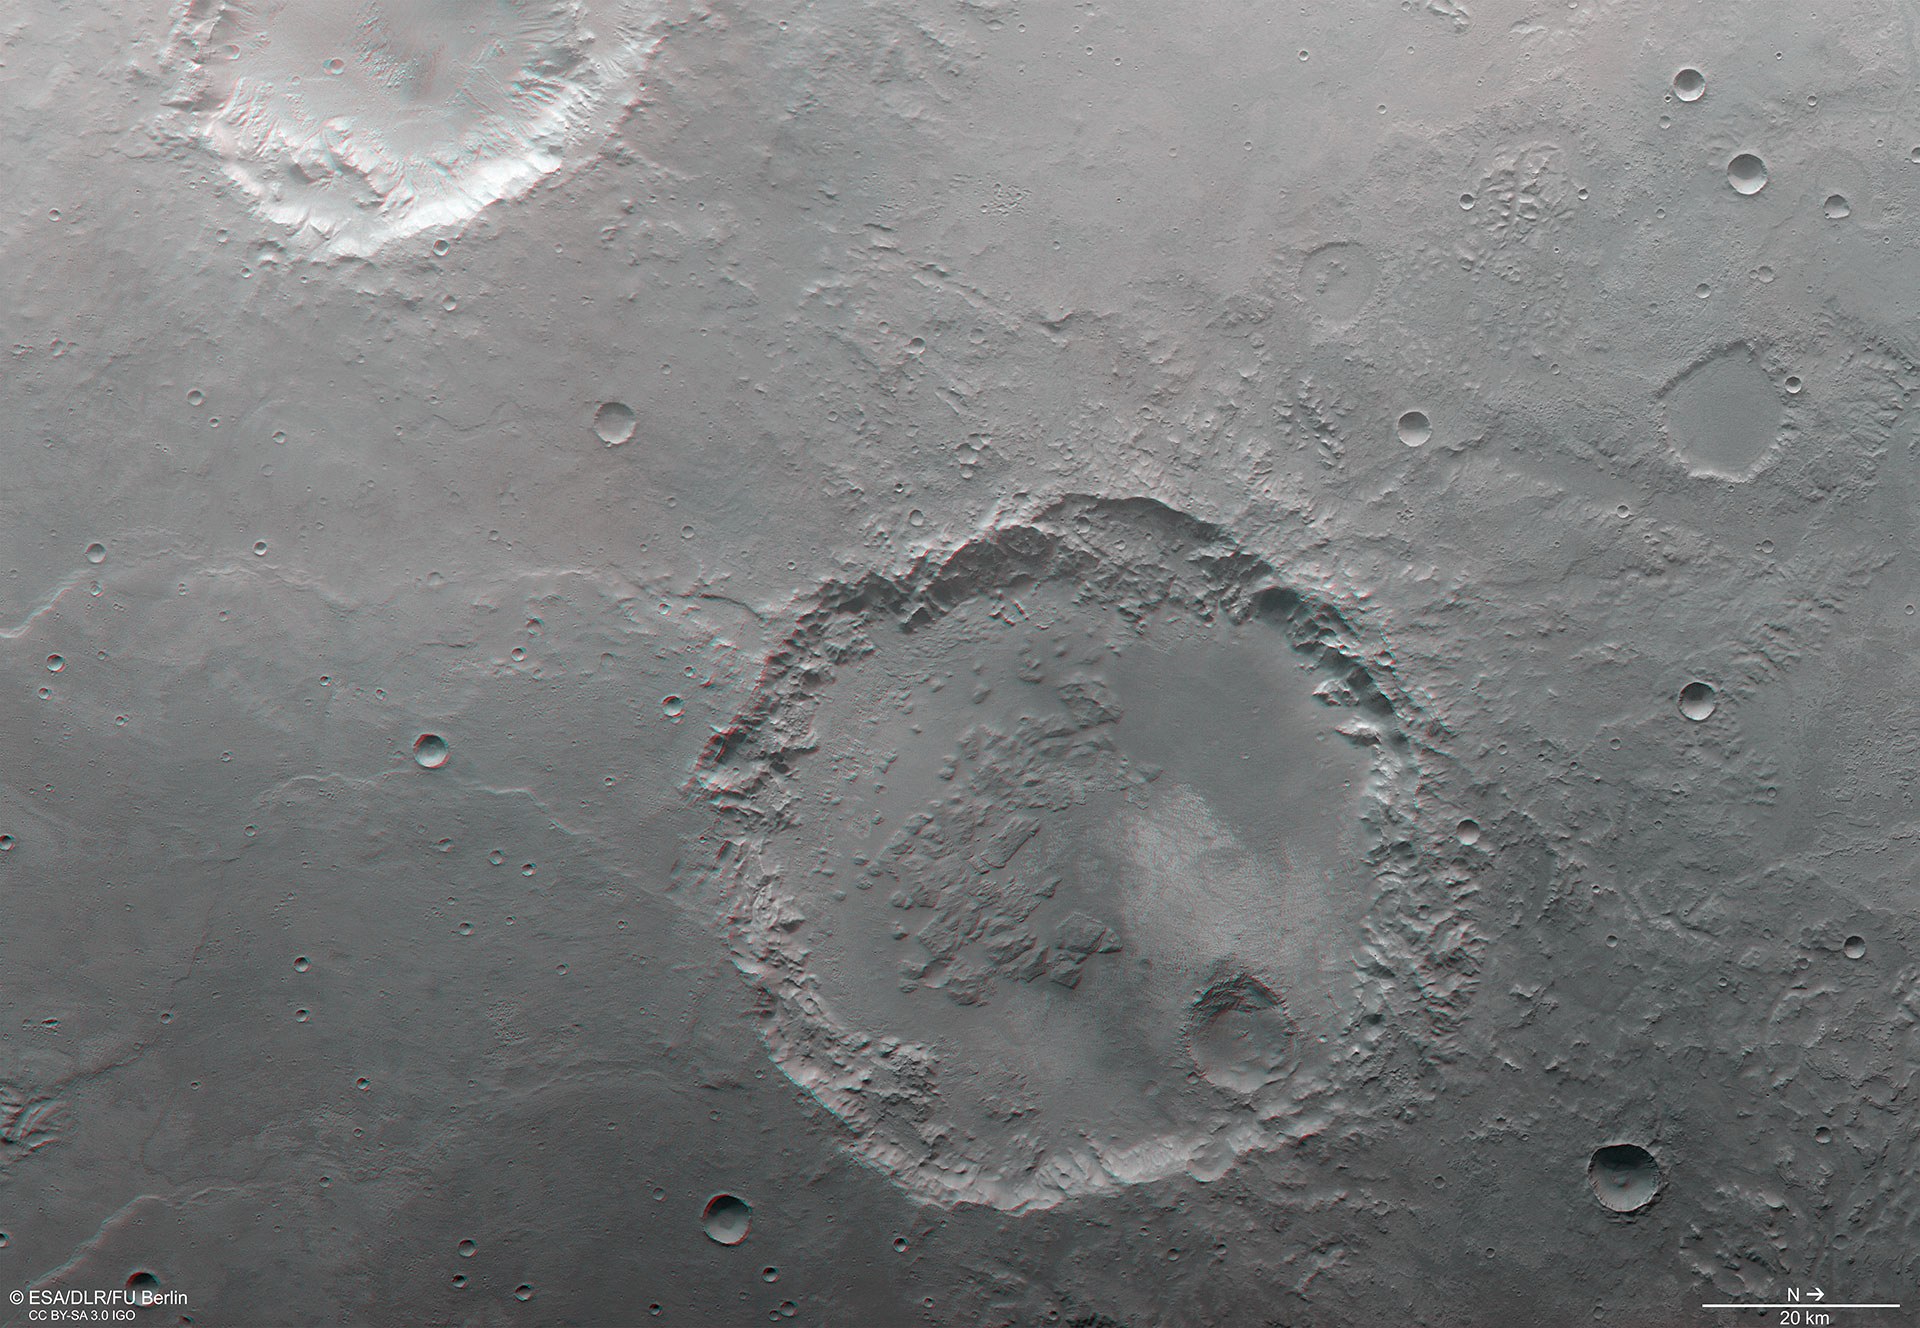 Anaglyphenbild des Kraters in der südlichen Hochlandregion Margaritifer Terra